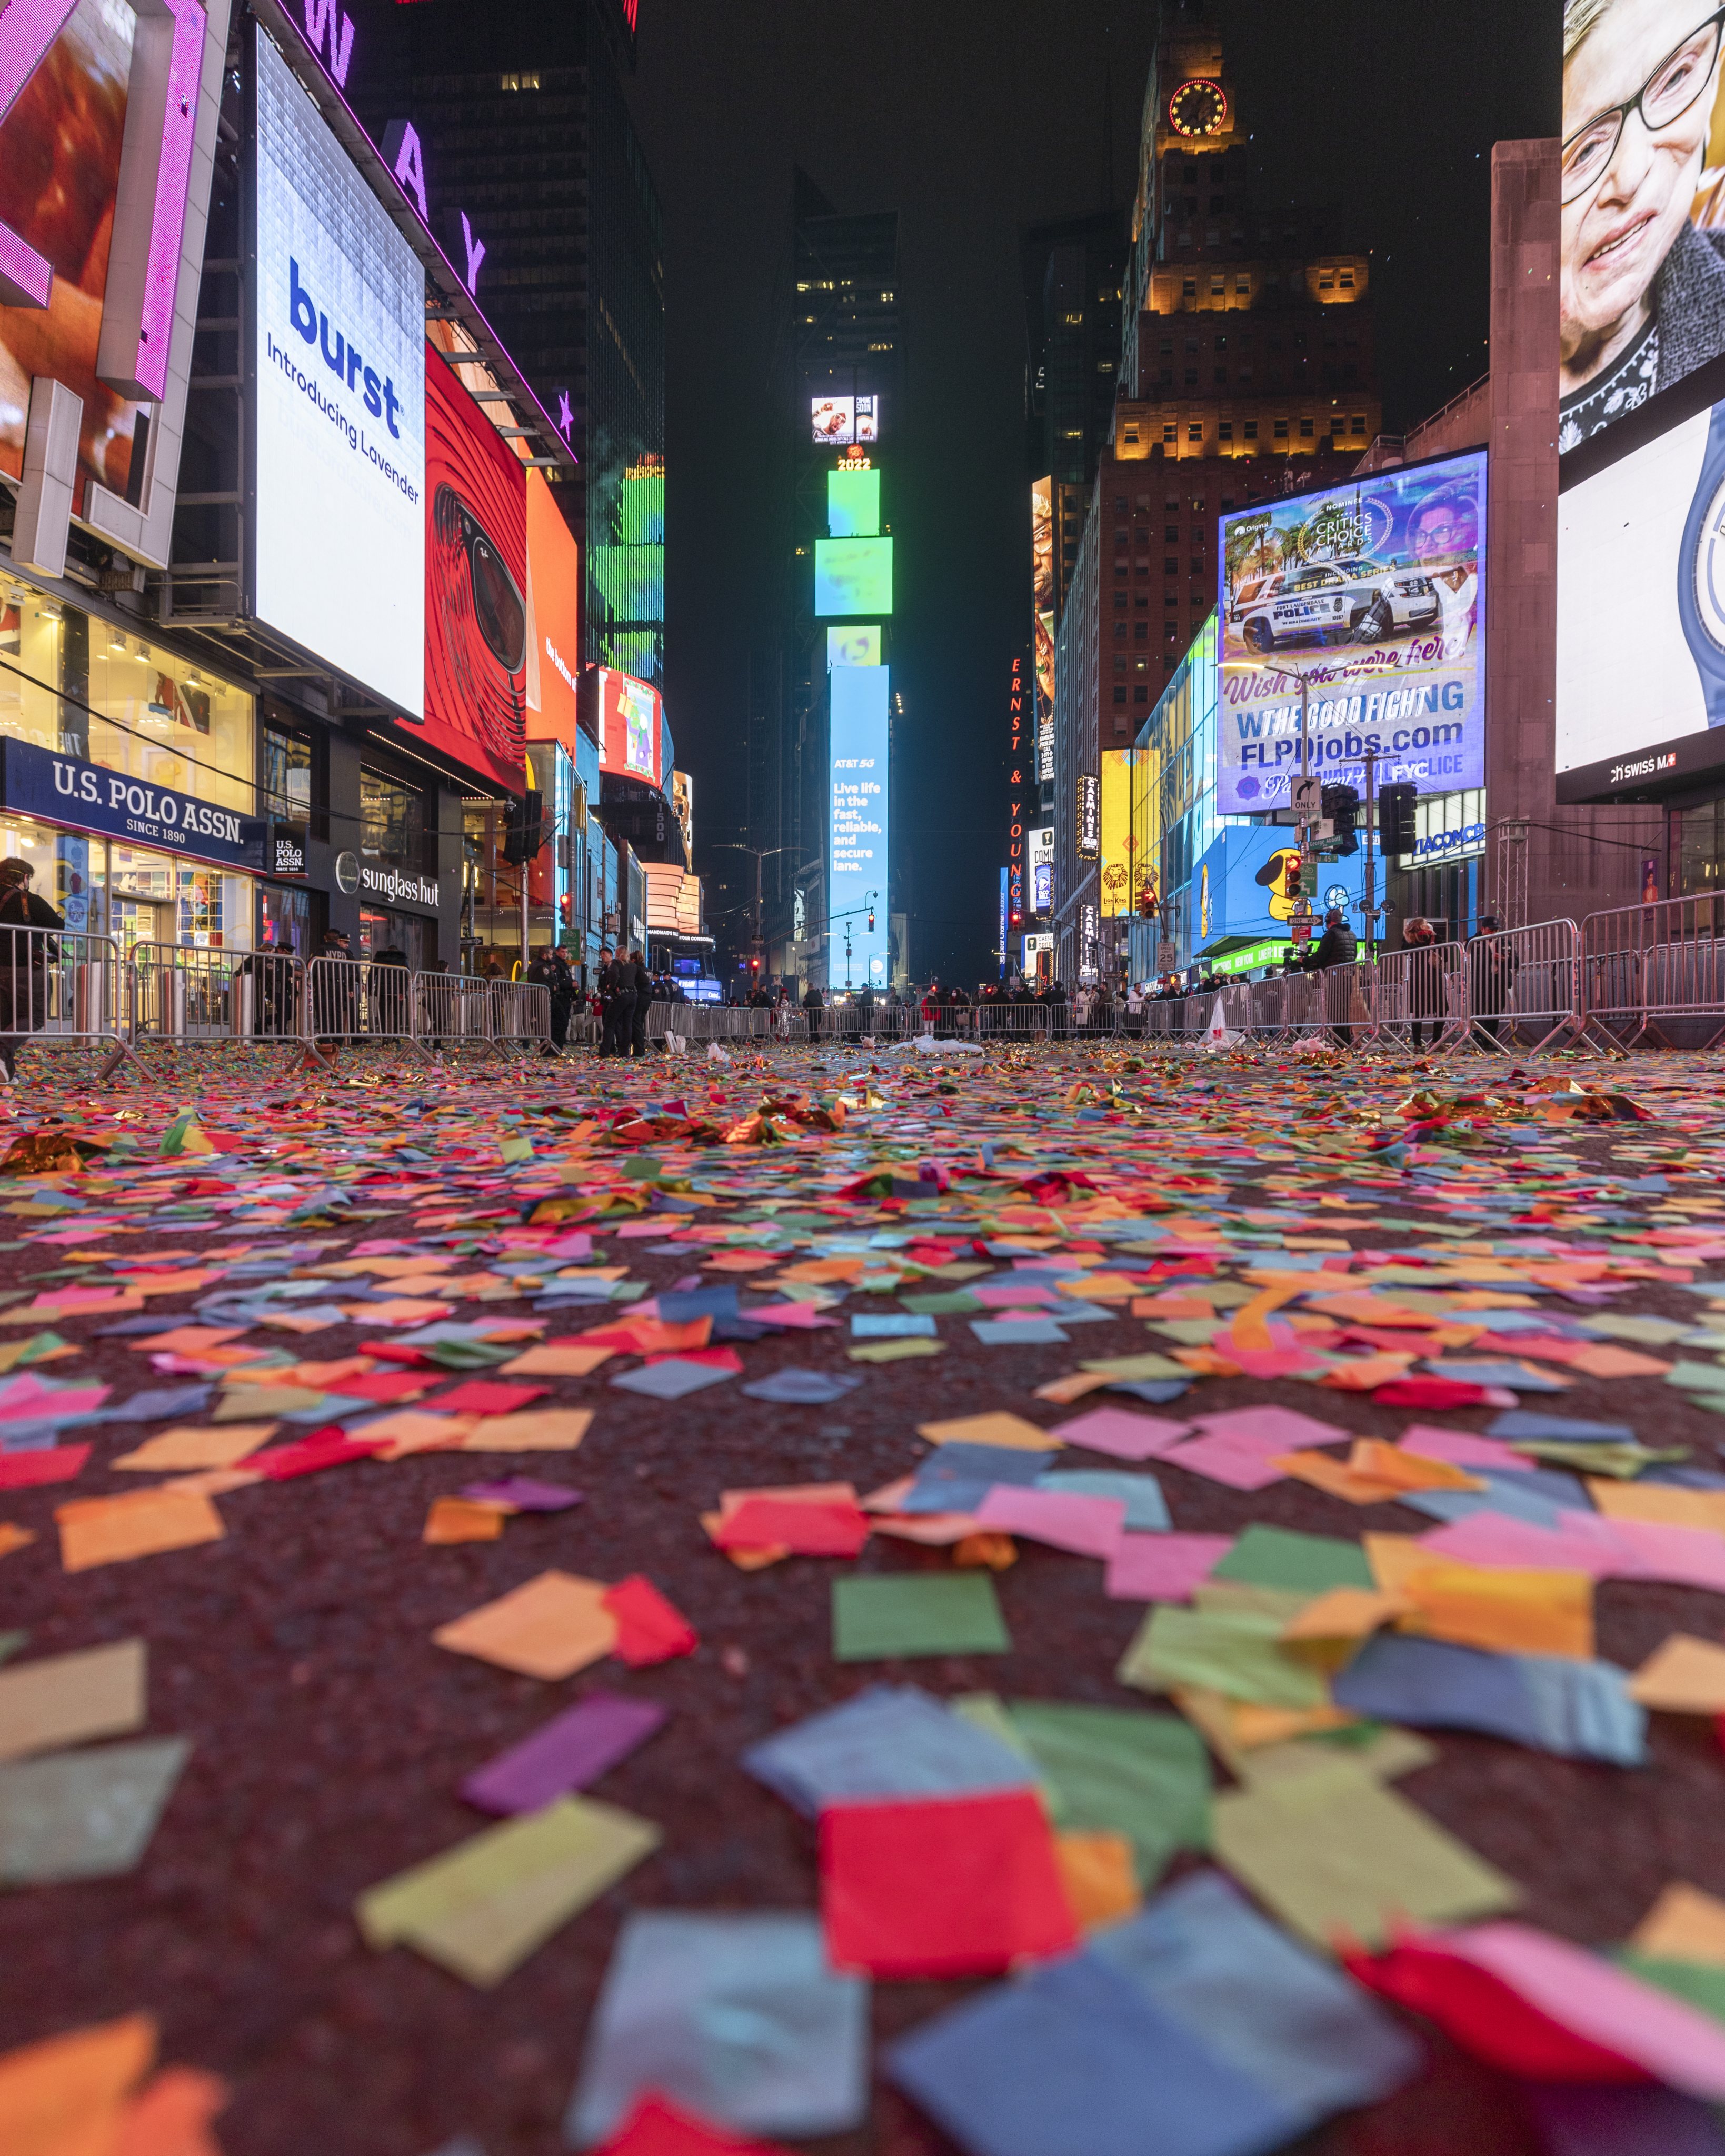 Limpeza da Praça de Times Square em Nova Iorque no dia 1 de janeiro, depois da Passagem de Ano